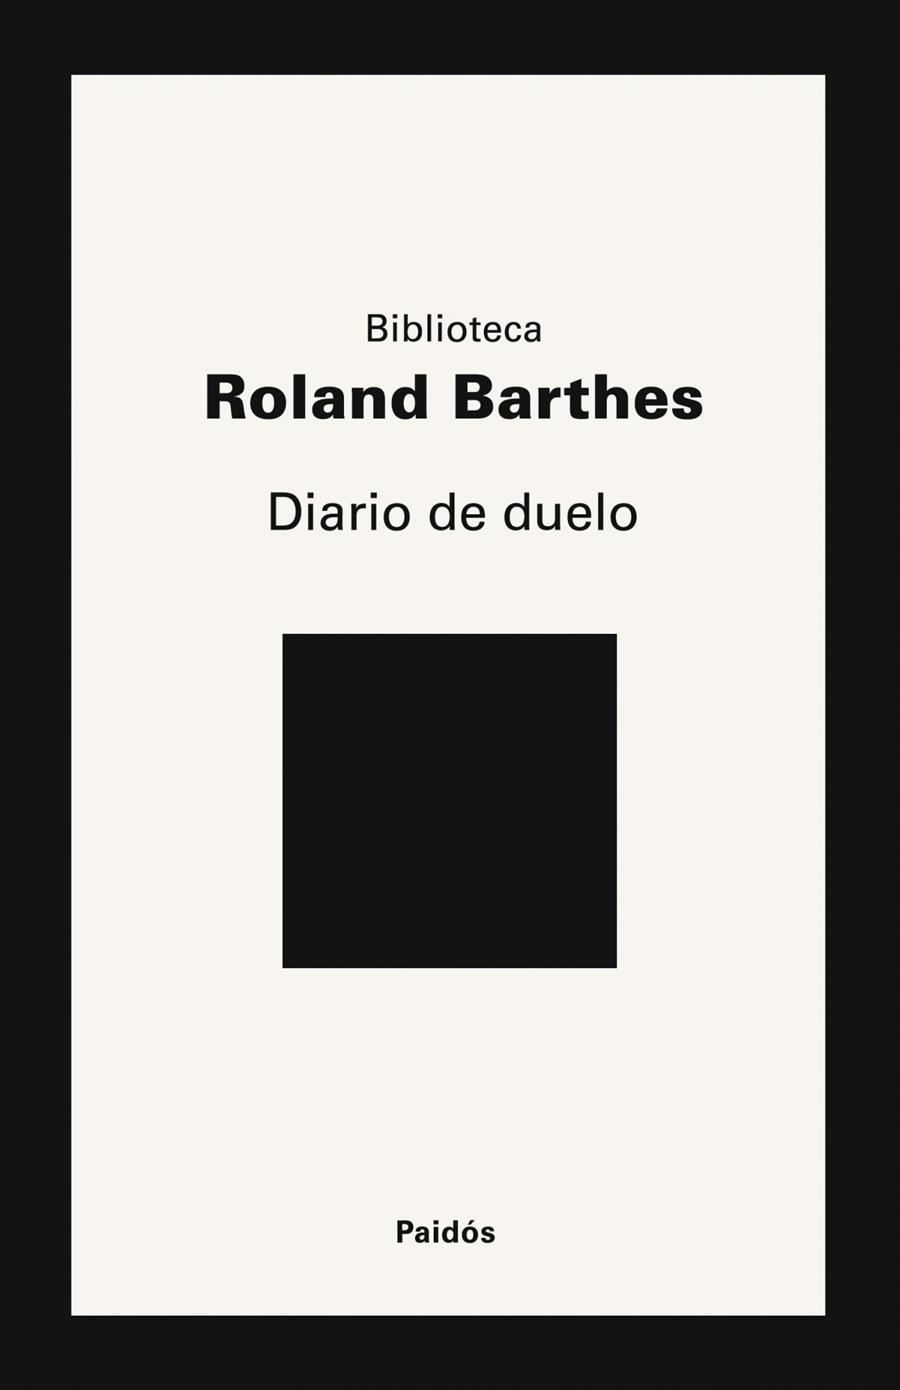 Diario de duelo | barthes, Roland